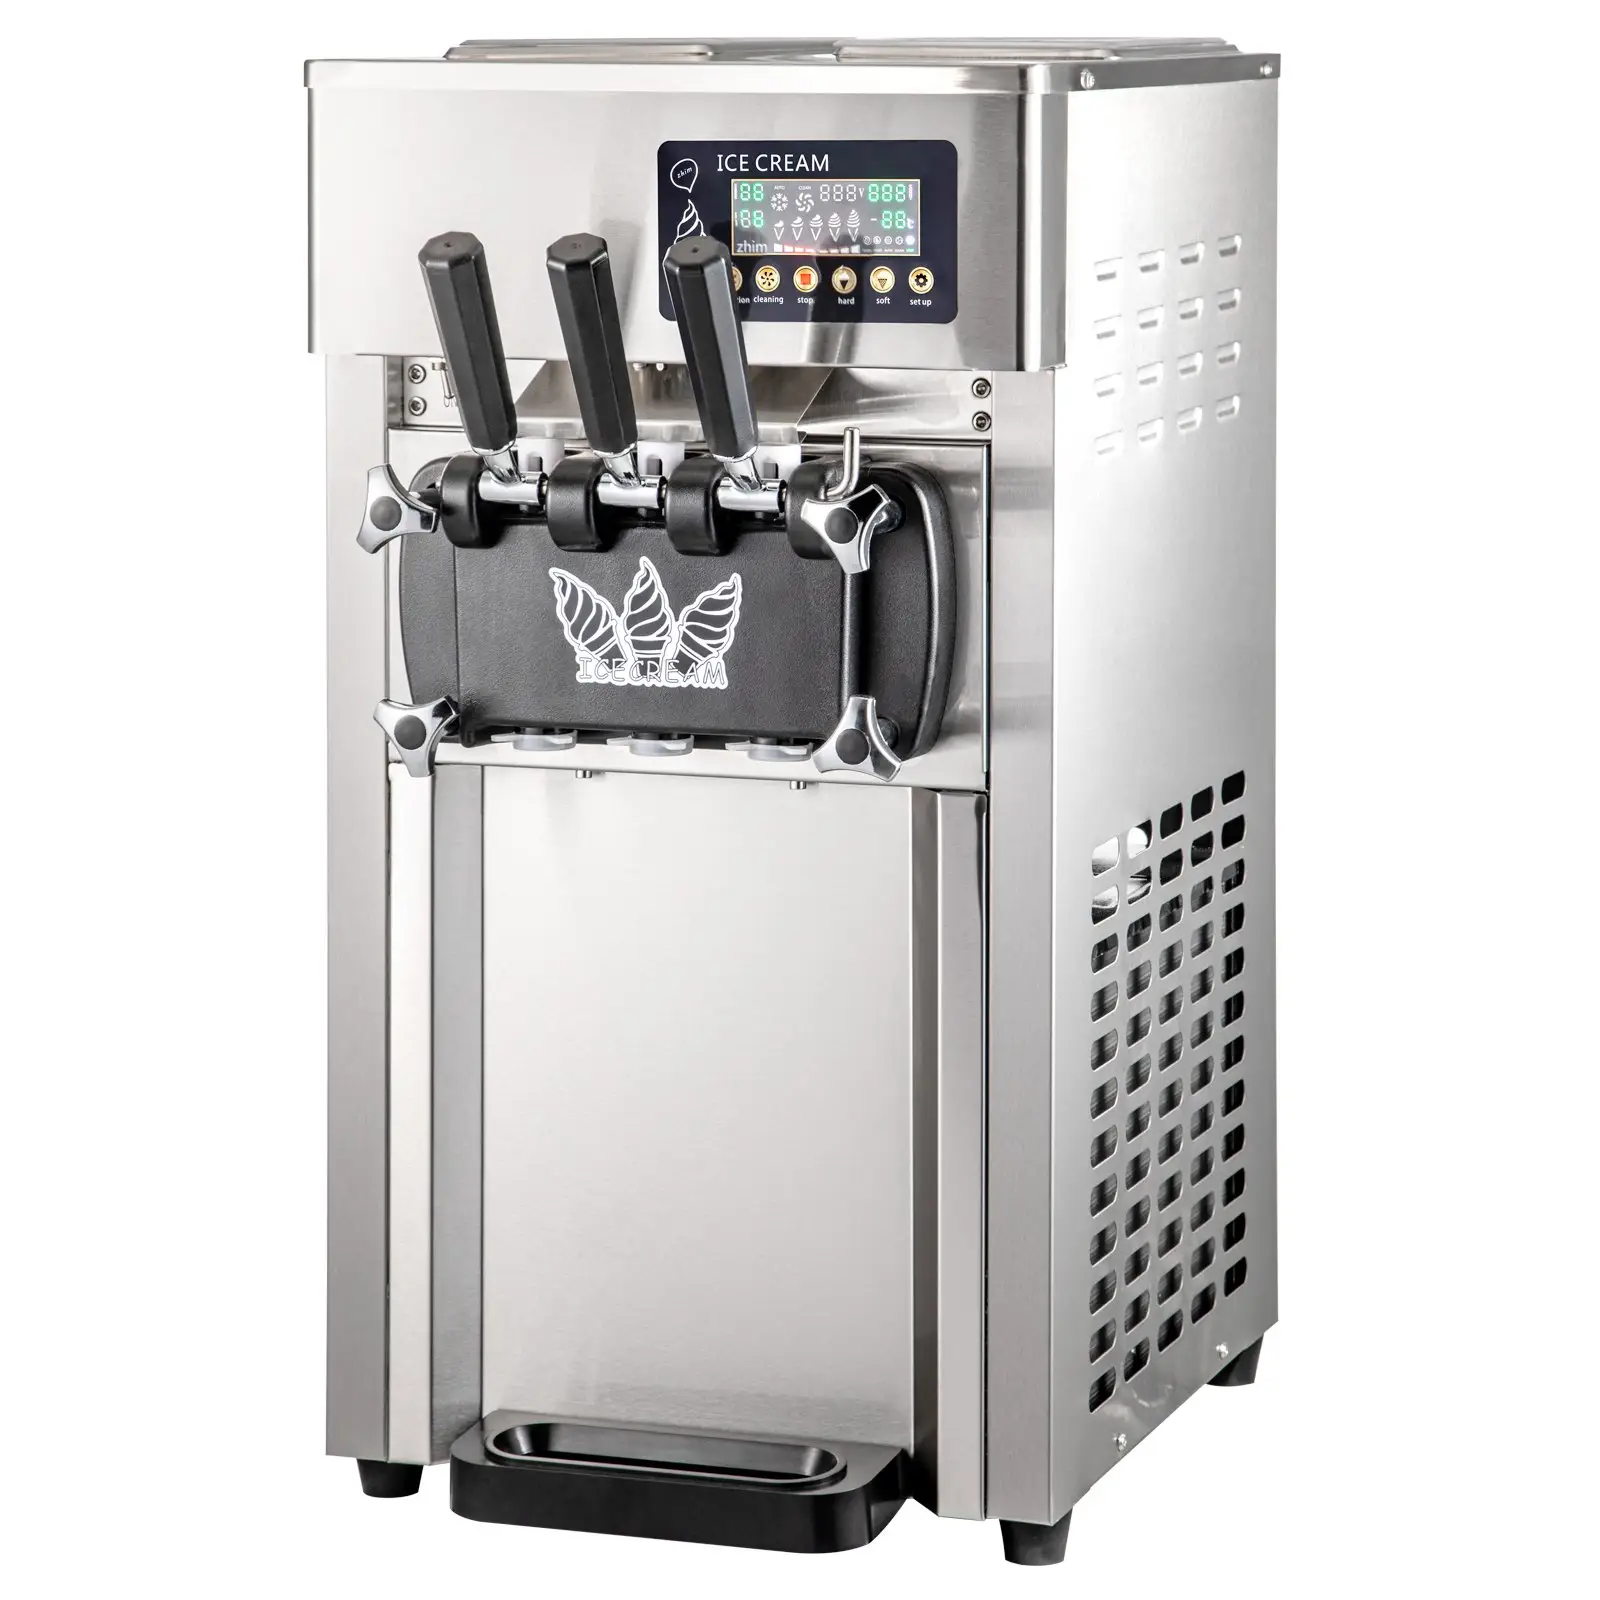 SIHAO-168 menawarkan khusus 20-28L/H layar pintar konsumsi energi tinggi rendah lembut melayani es krim untuk Kafe